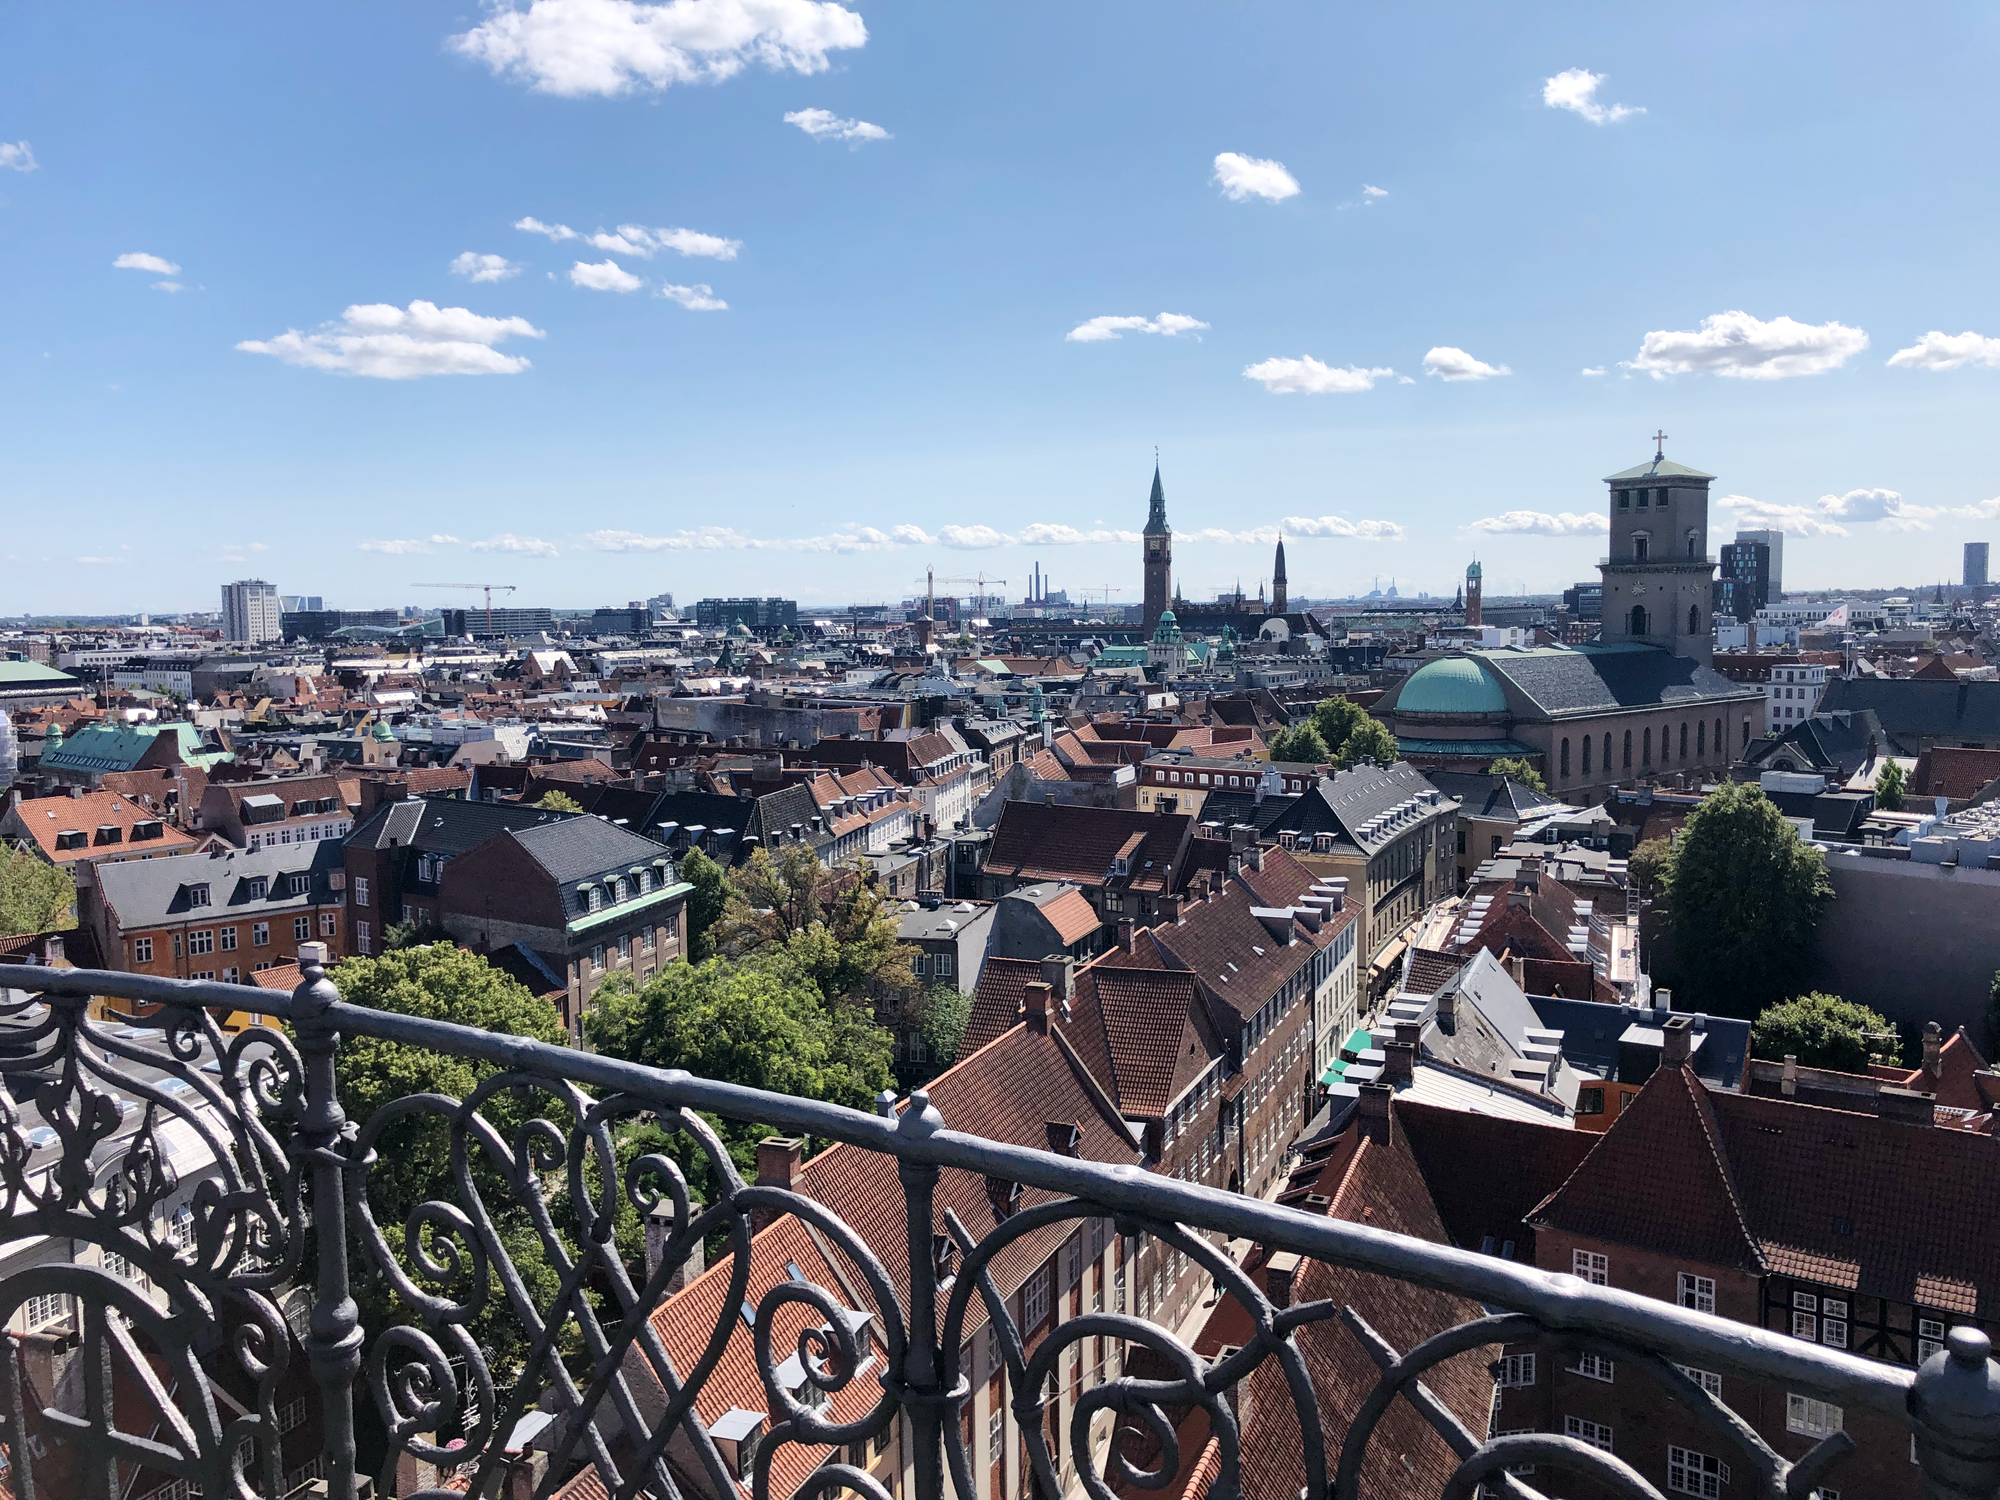 Impressions of Europe - Copenhagen, part 2